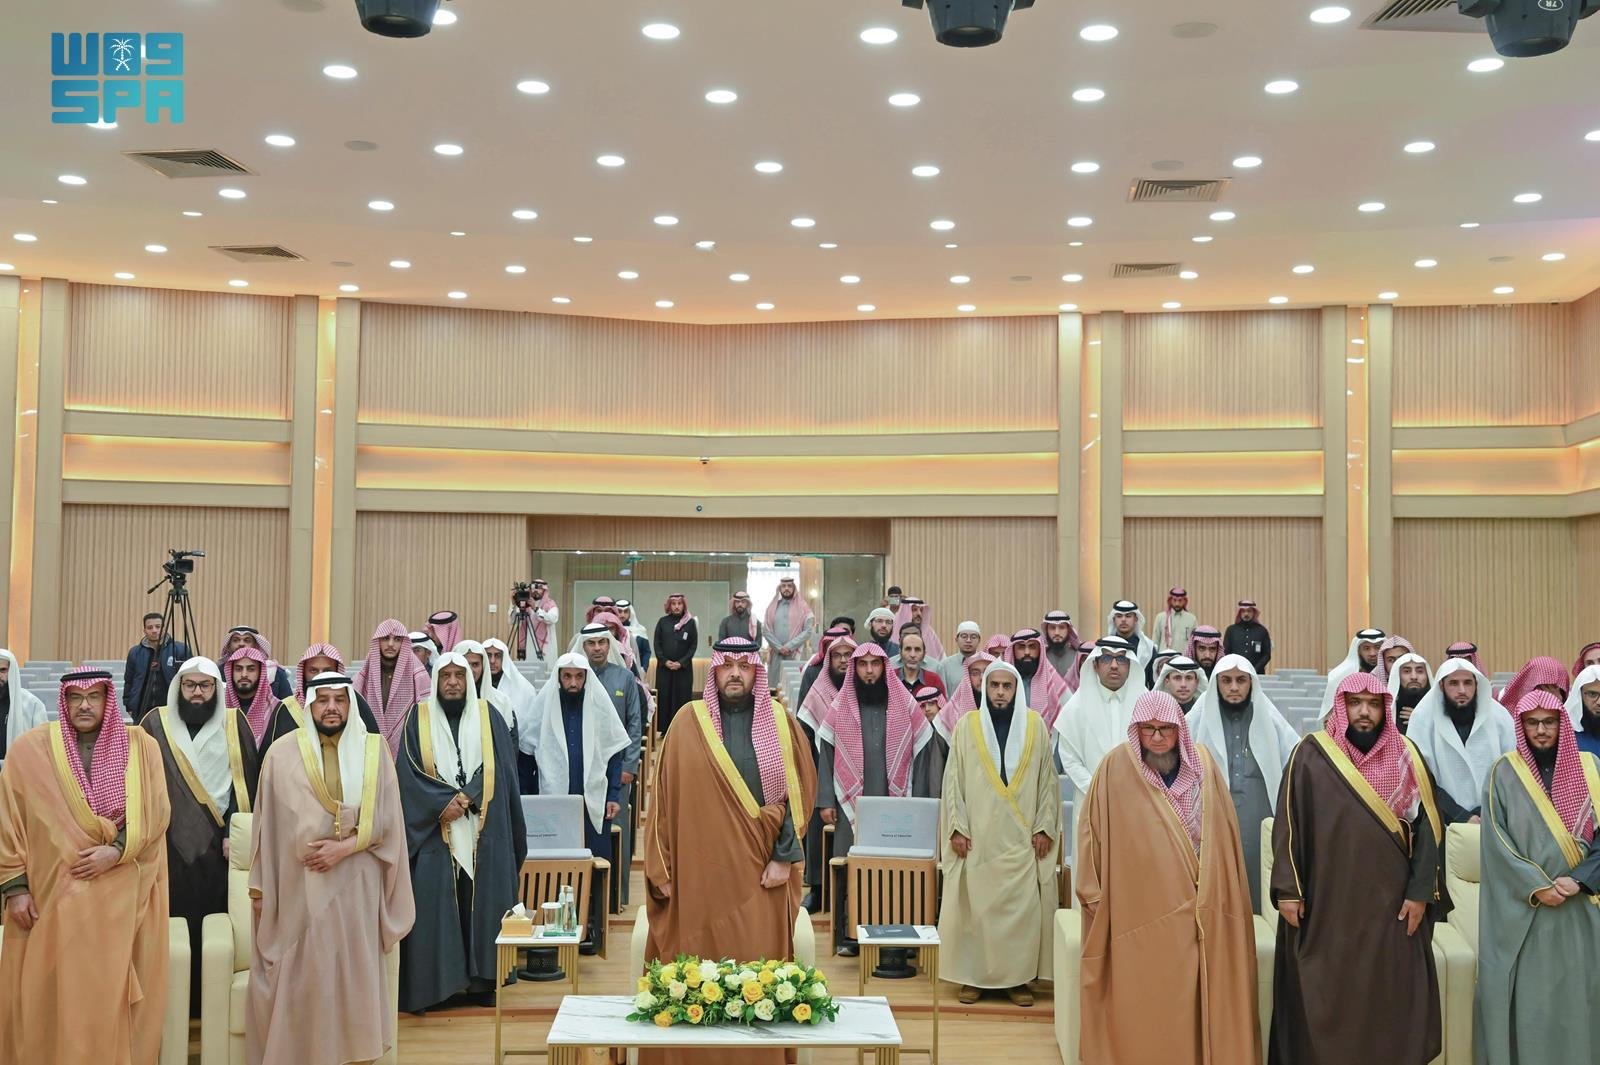 الأمير فيصل بن خالد بن سلطان يكرم الفائزين في مسابقة سموه لحفظ القرآن بالحدود الشمالية